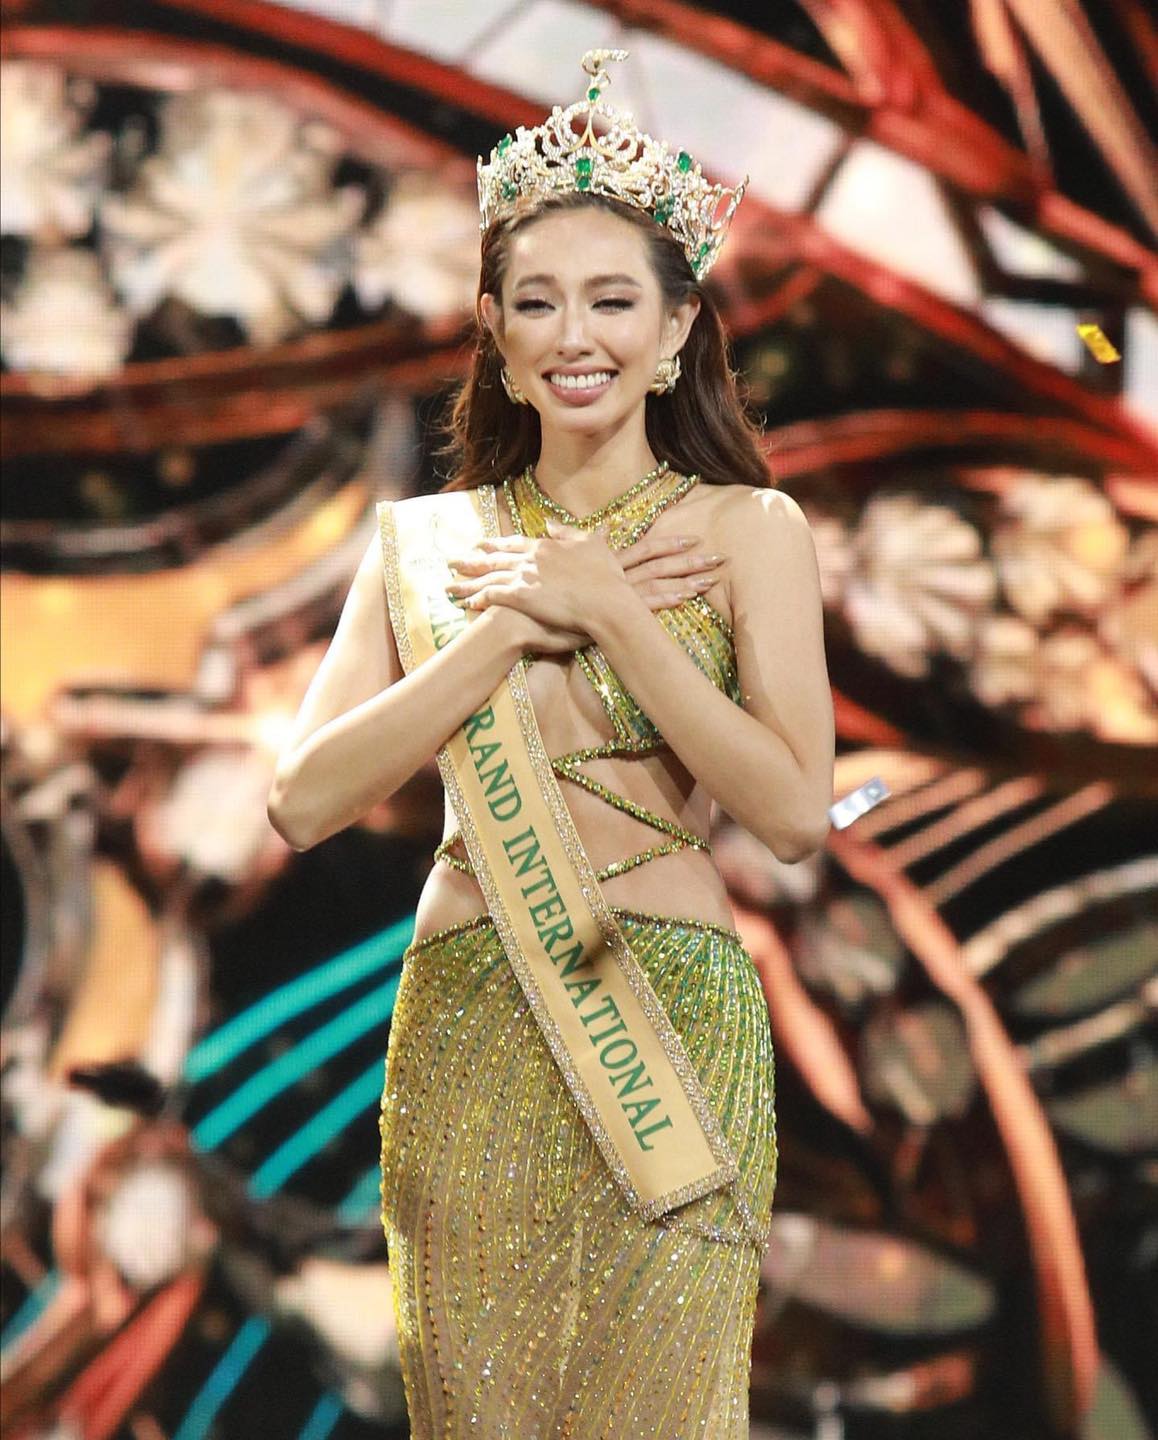 Nguyễn Thúc Thuỳ Tiên sẽ có 1 năm đương nhiệm ở vị trí Hoa hậu